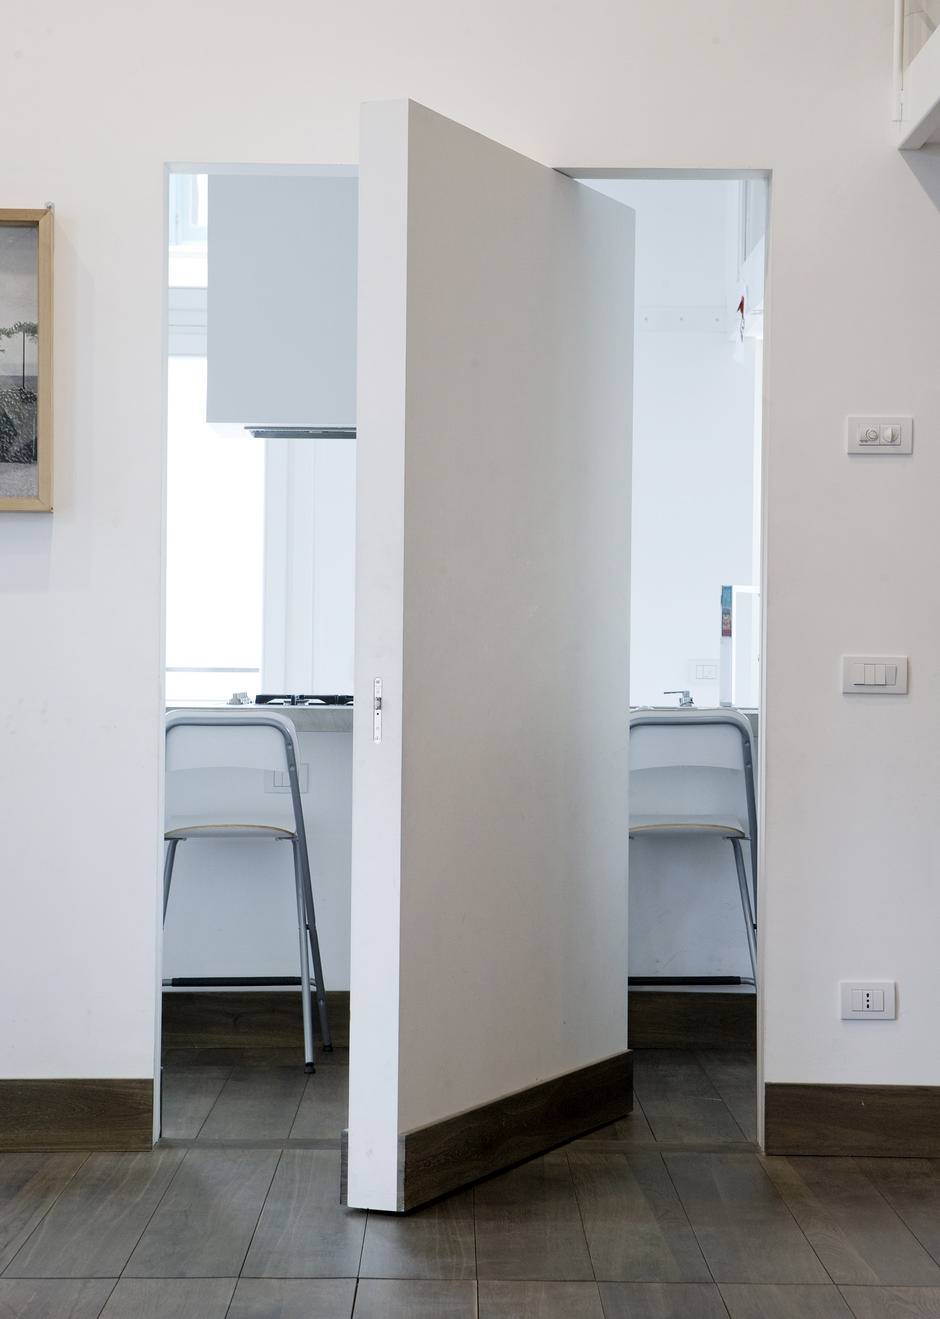 Двери в интерьере квартиры: как правильно выбрать цвет, фото-примеры, светлые и невидимые полотна